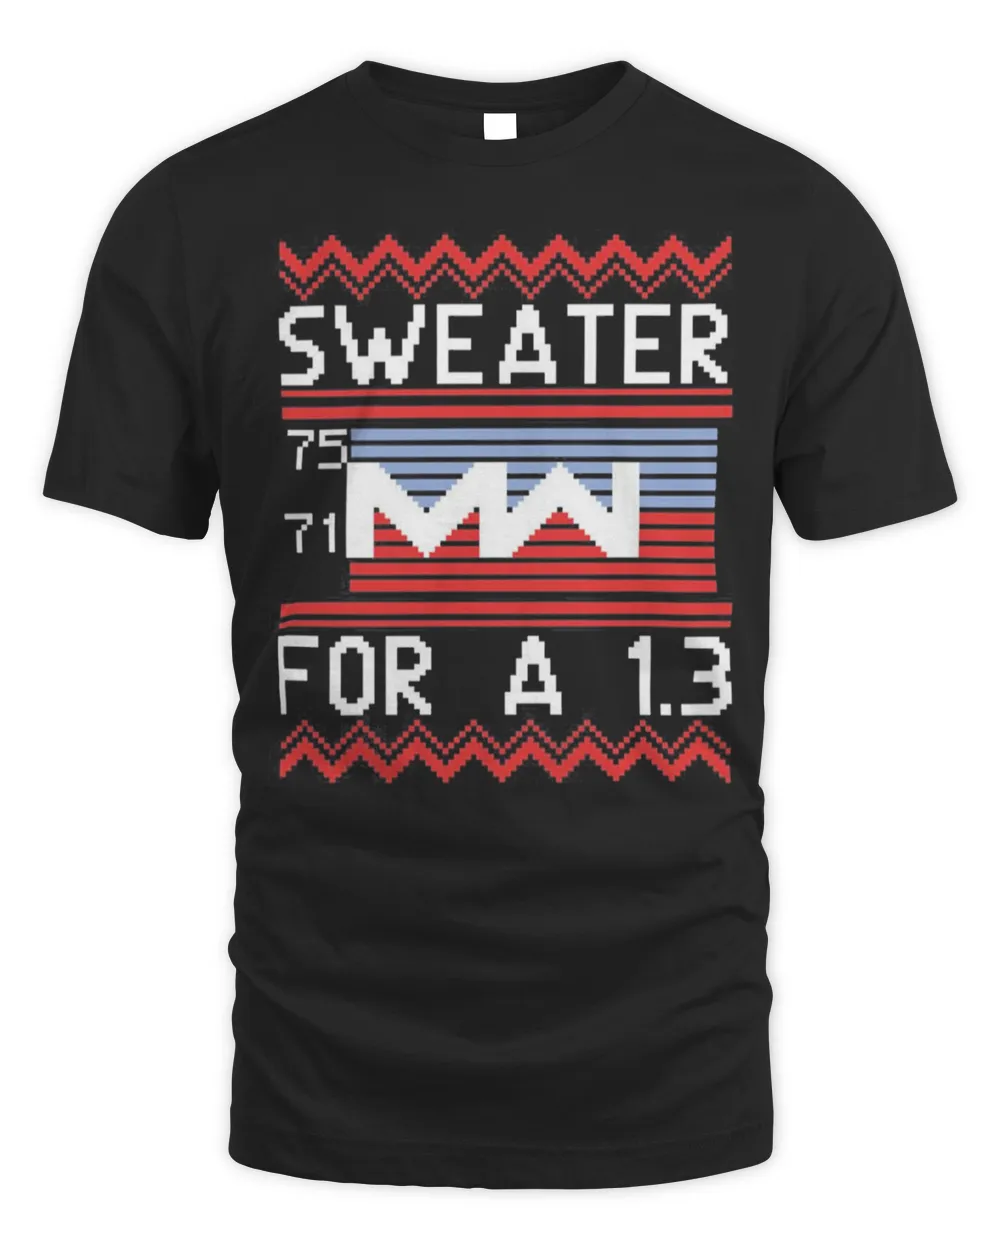 Sweater For A 1.3 Sbmm T-Shirt